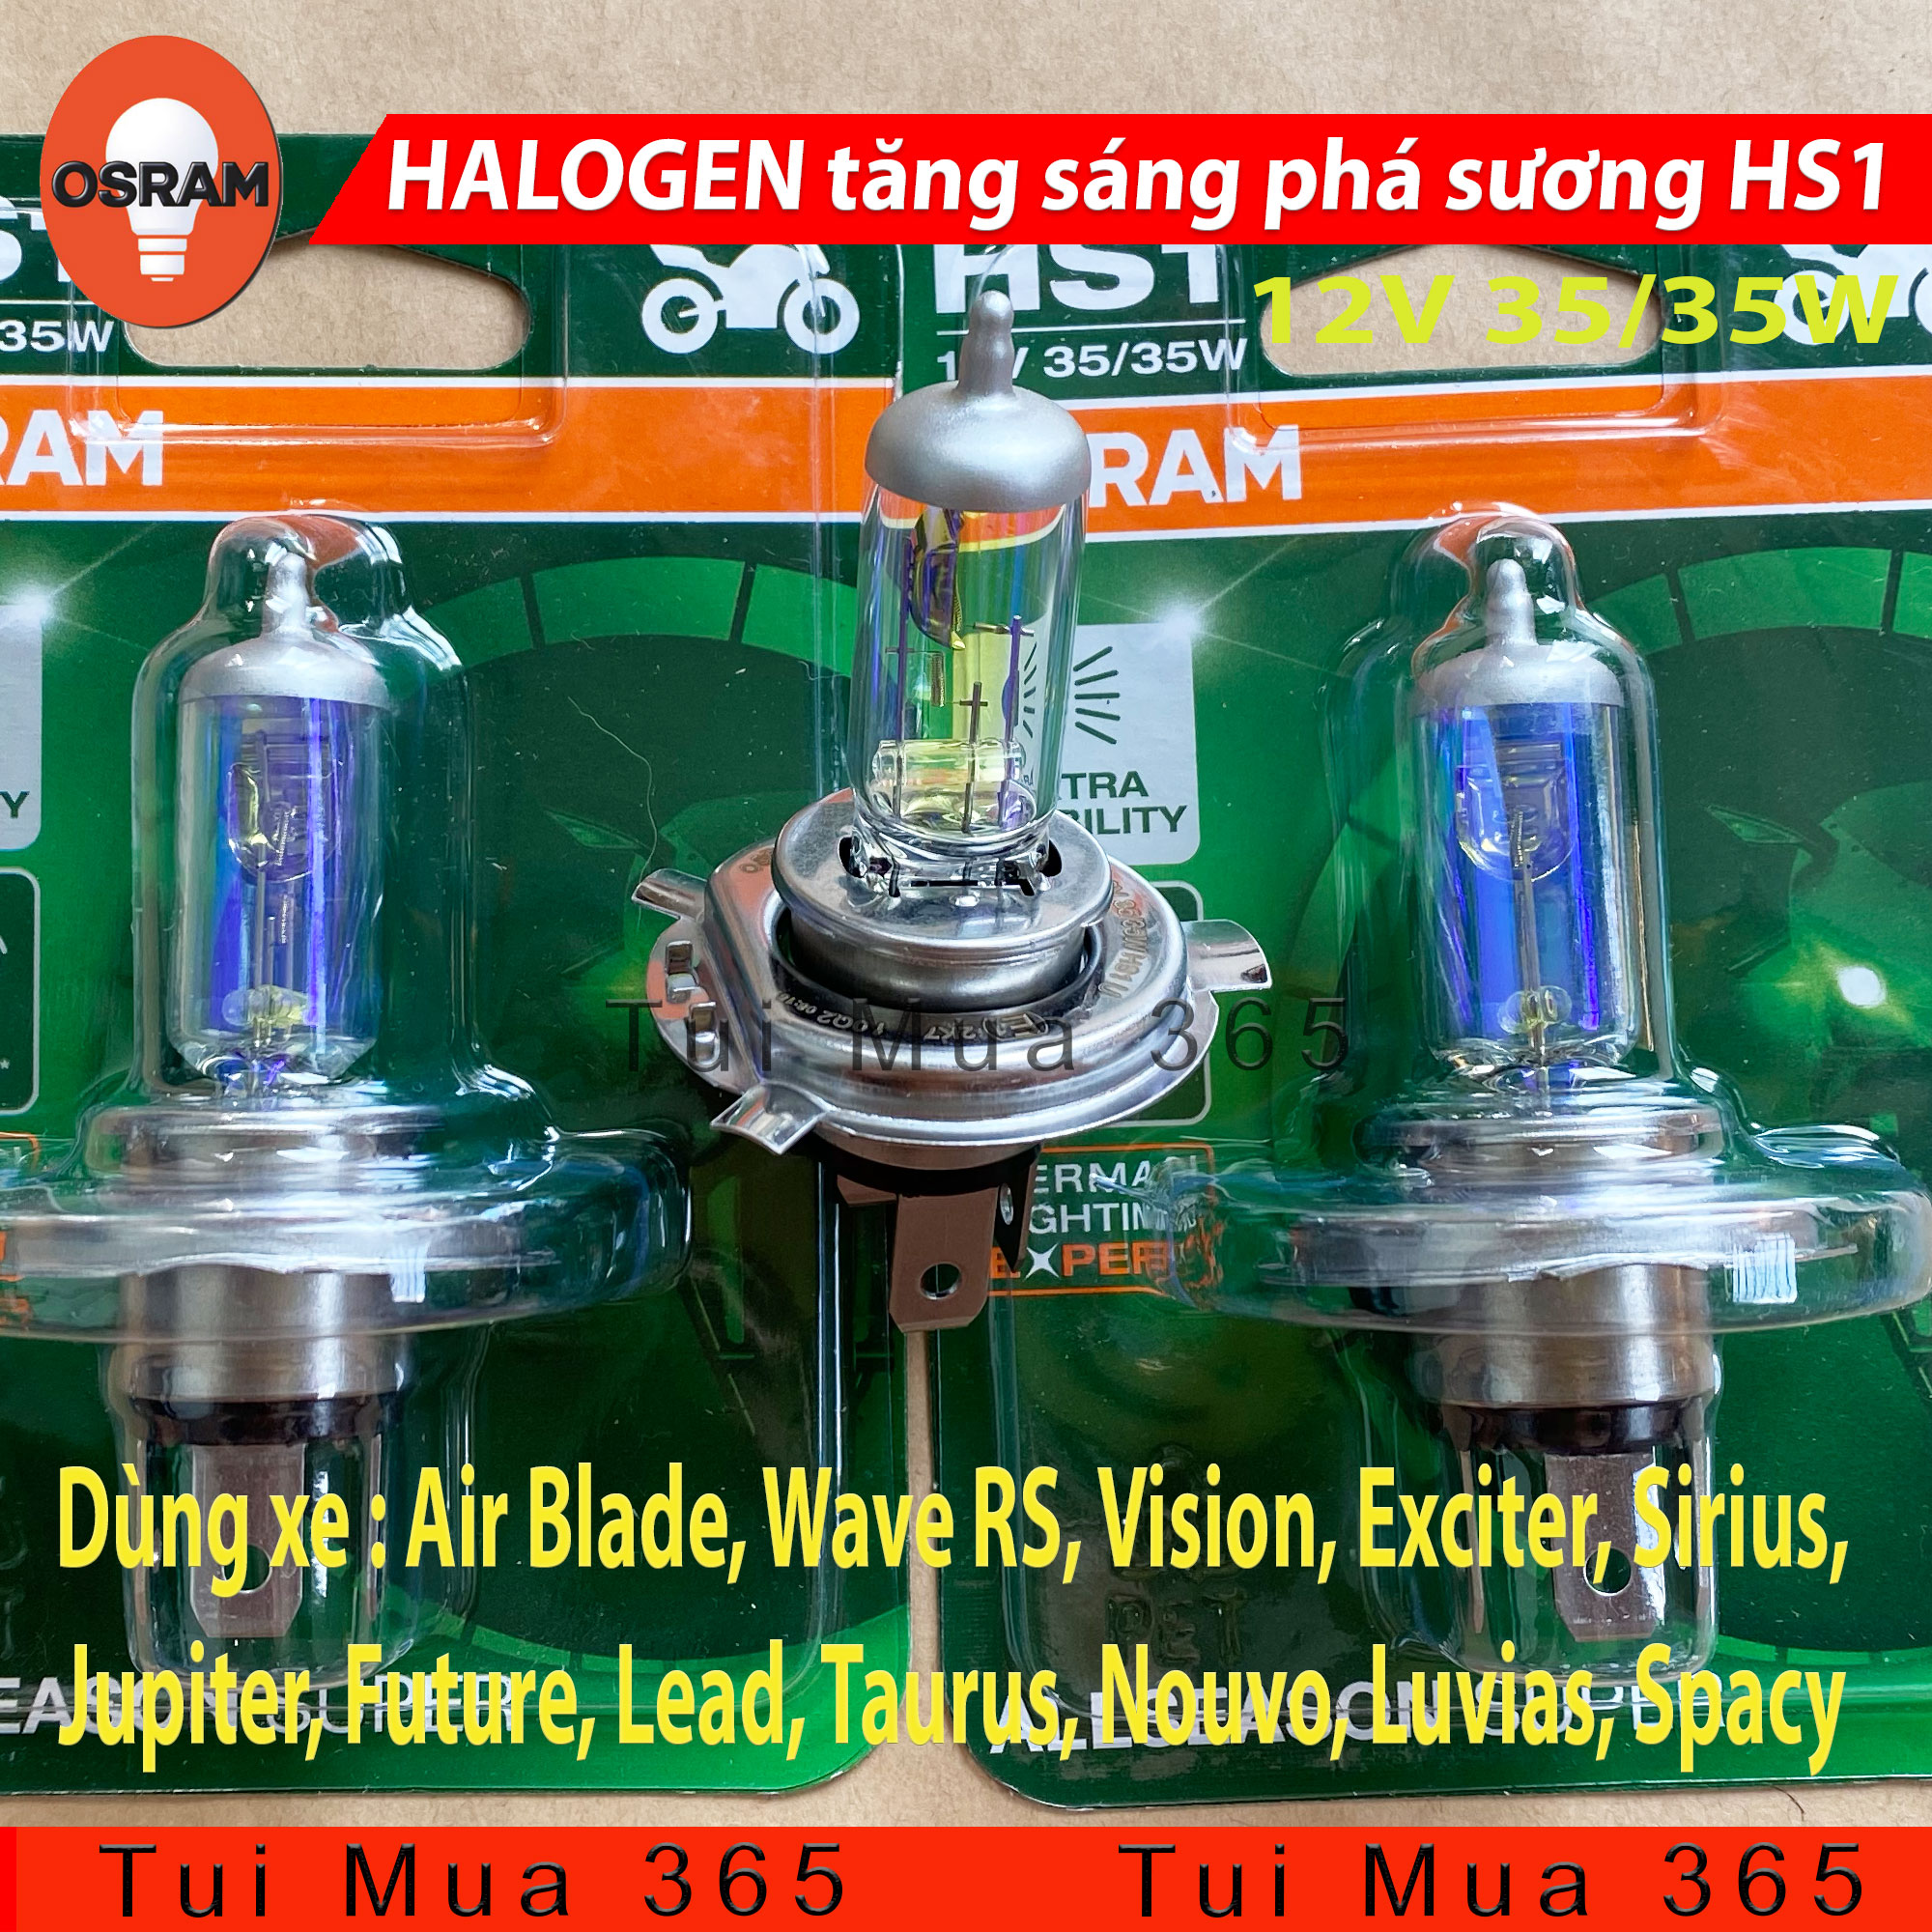 Bóng đèn HS1 tăng sáng phá sương HALOGEN OSRAM Air Blade, Wave RS ...